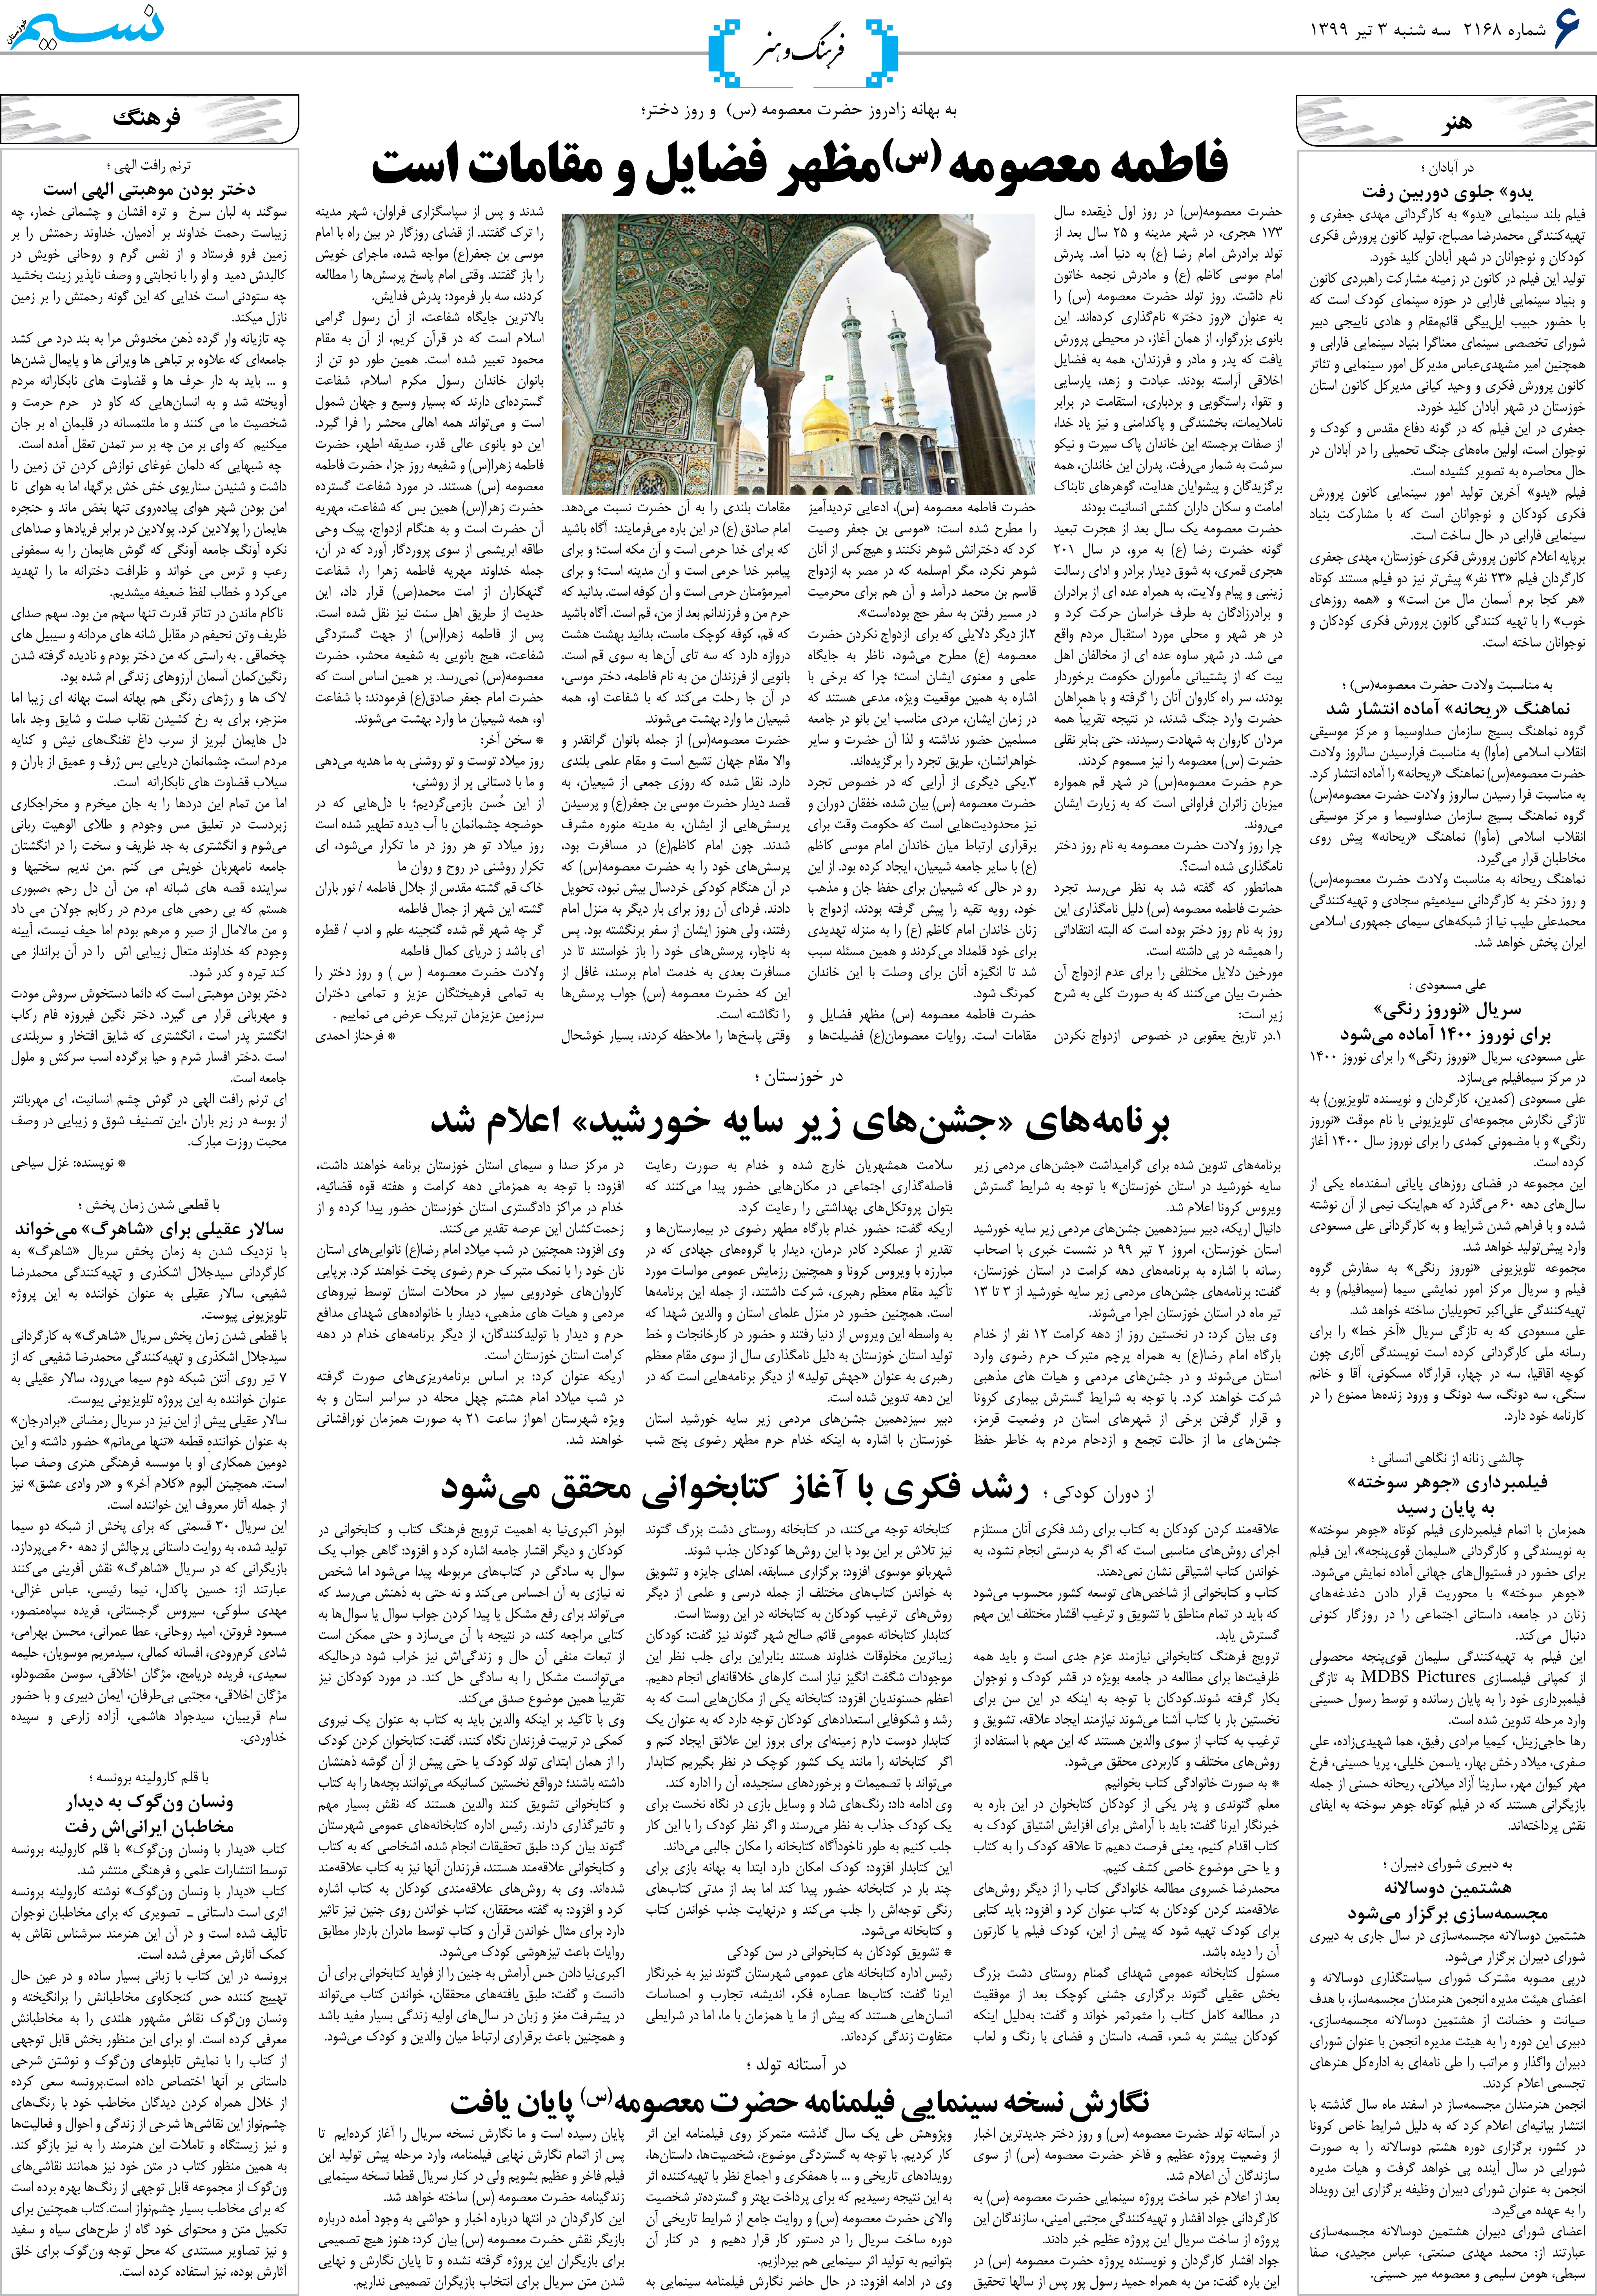 صفحه فرهنگ و هنر روزنامه نسیم شماره 2168